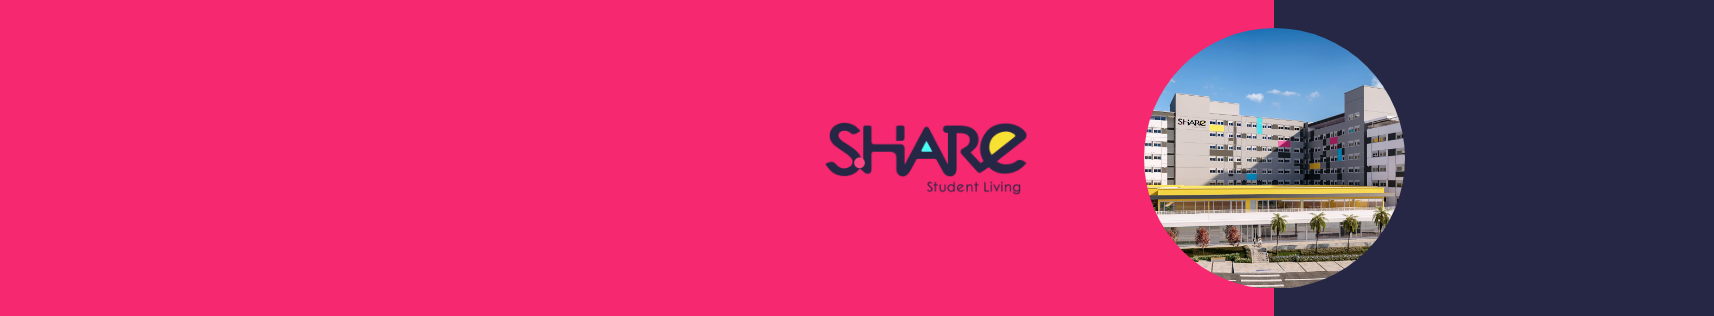 Conheça o share student living